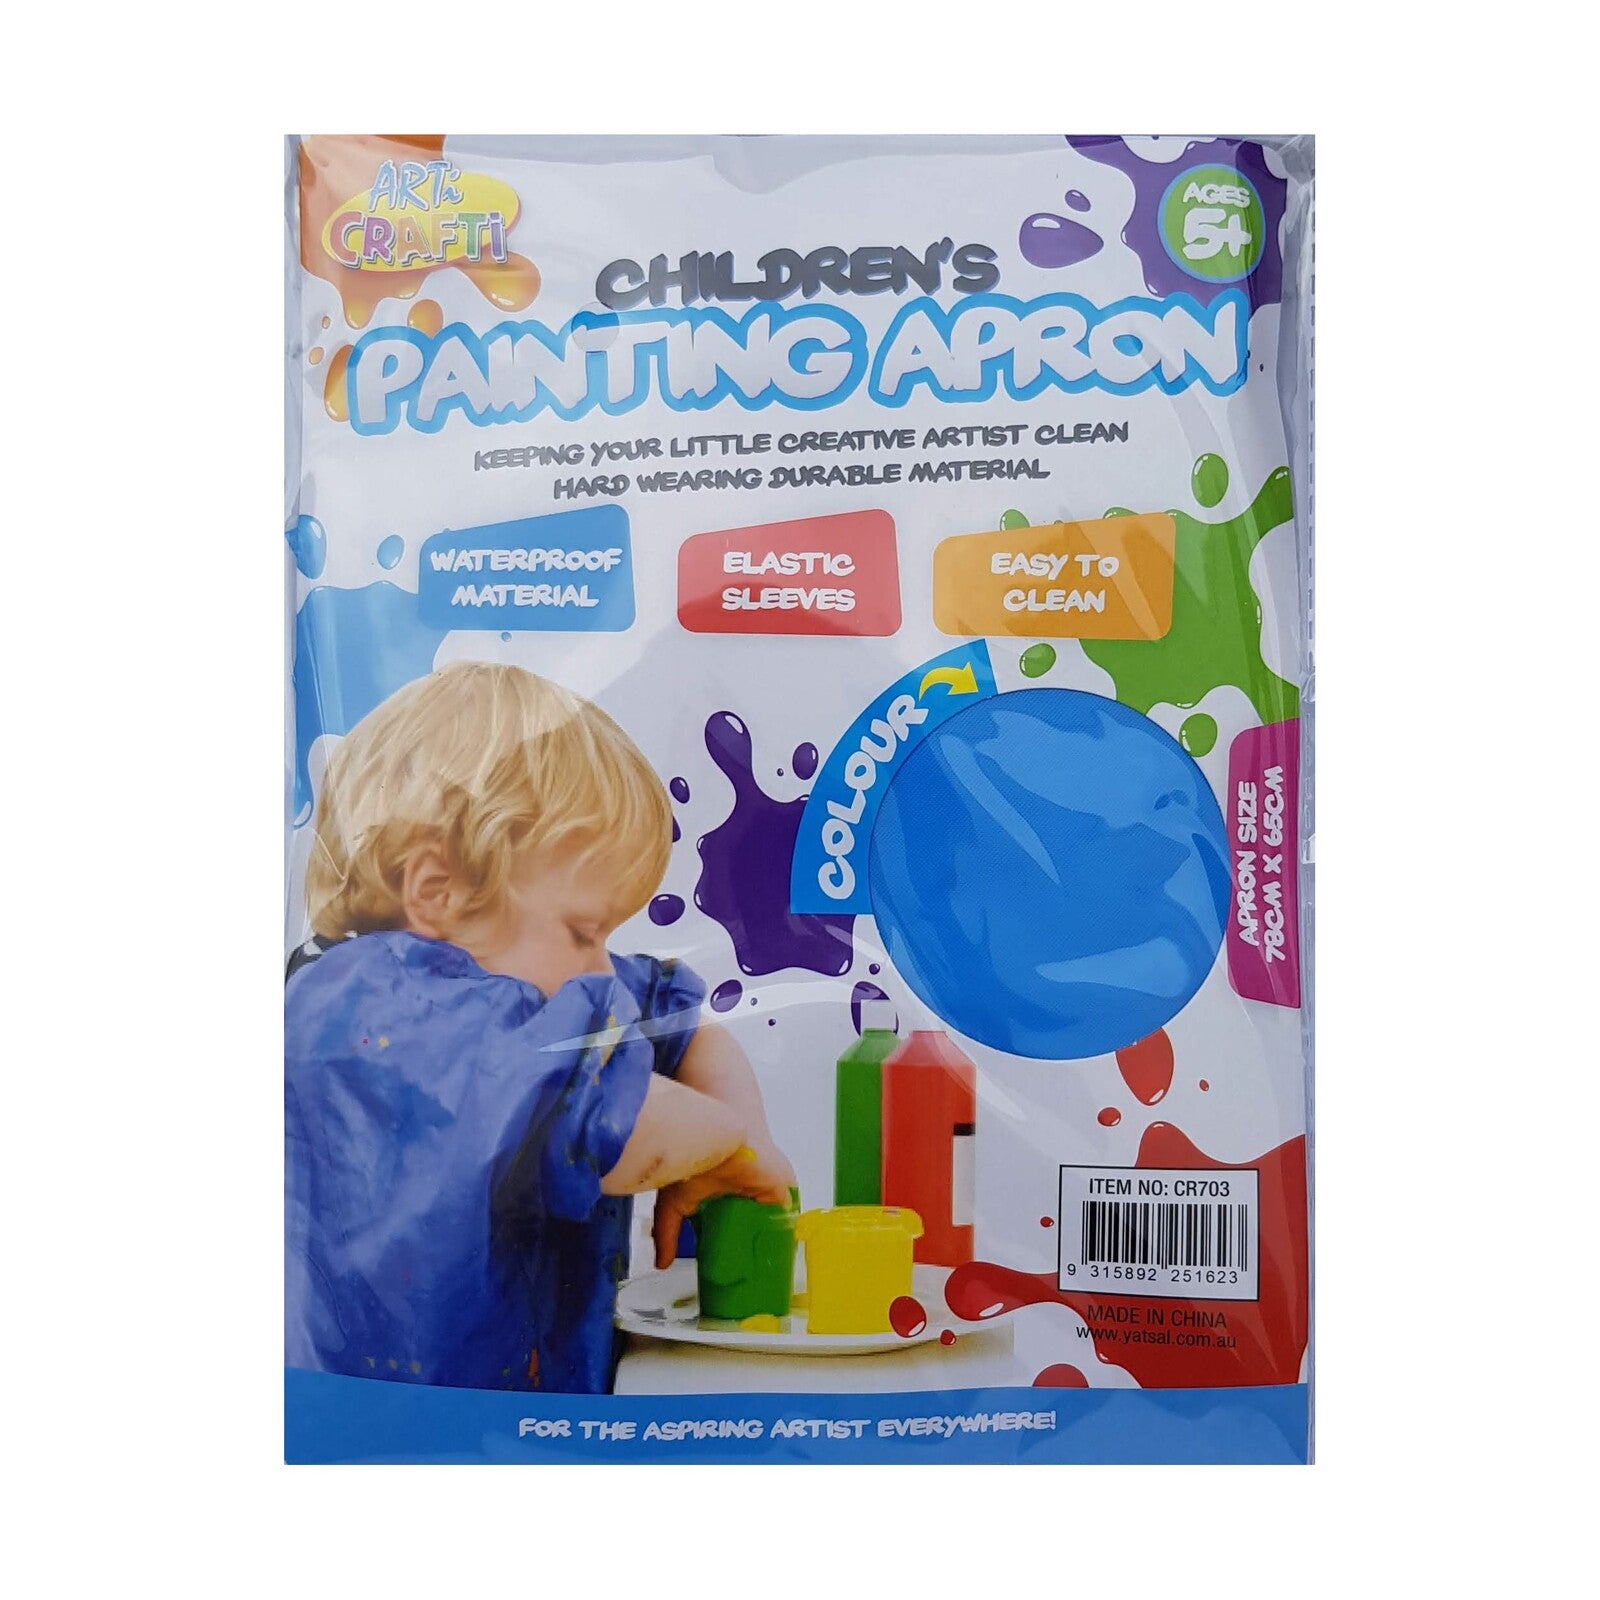 Kids Painting Apron Blue or Pink Children Waterproof Clean Elastic